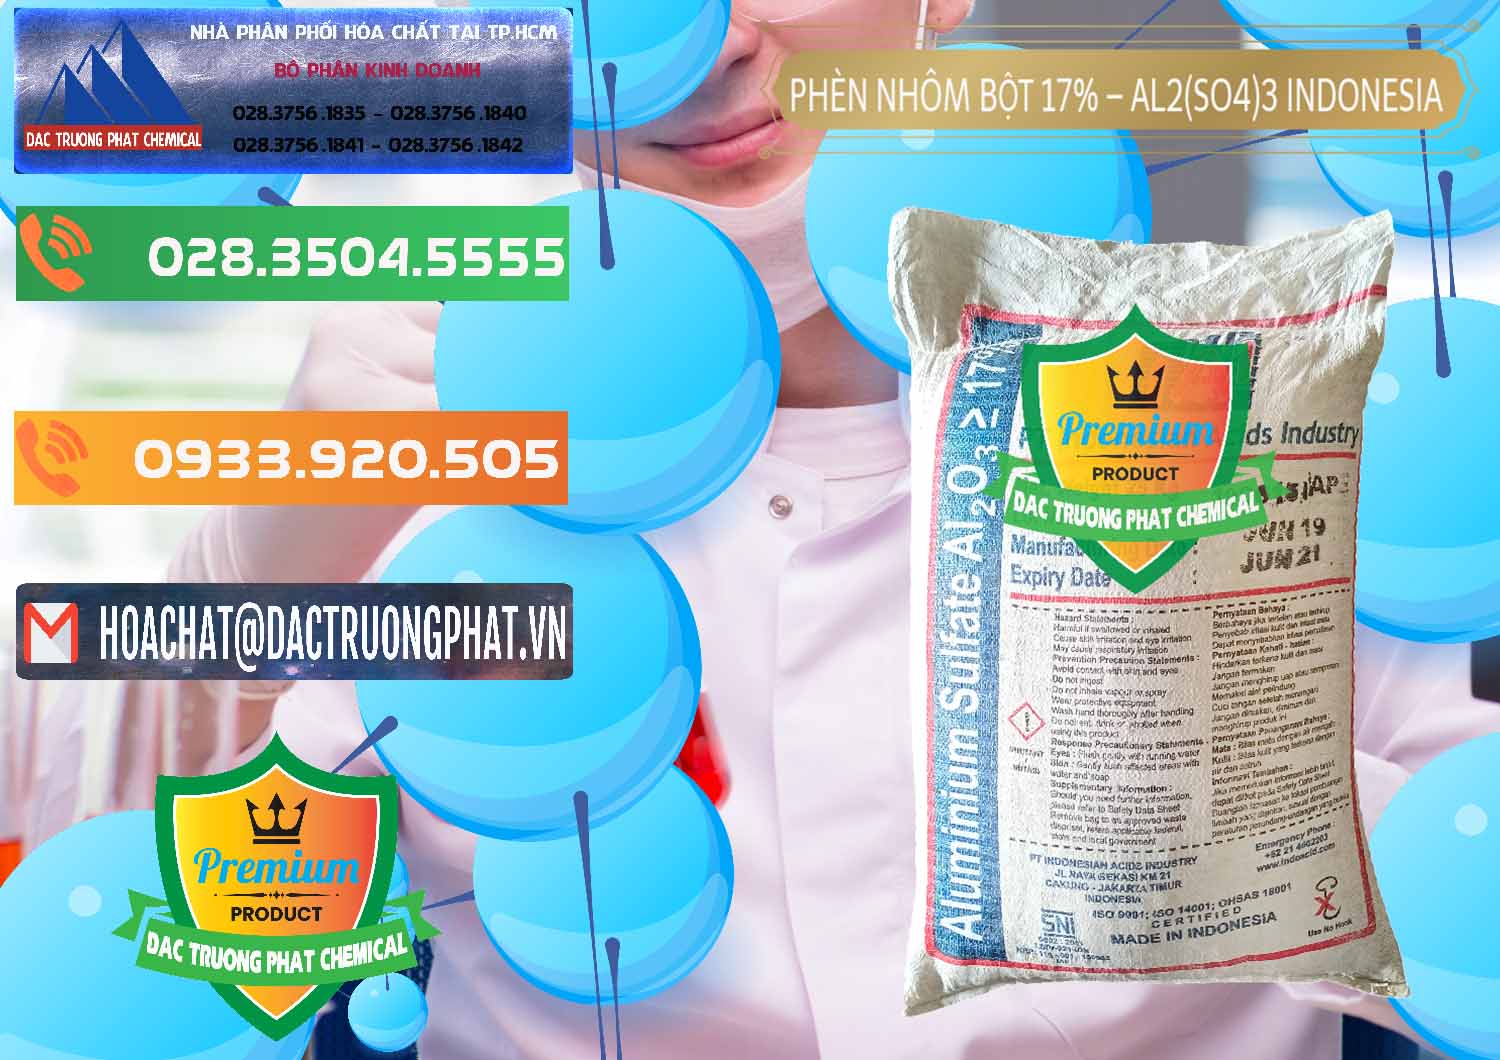 Cty phân phối ( bán ) Phèn Nhôm Bột - Al2(SO4)3 17% bao 25kg Indonesia - 0114 - Nhà cung cấp _ kinh doanh hóa chất tại TP.HCM - hoachatxulynuoc.com.vn